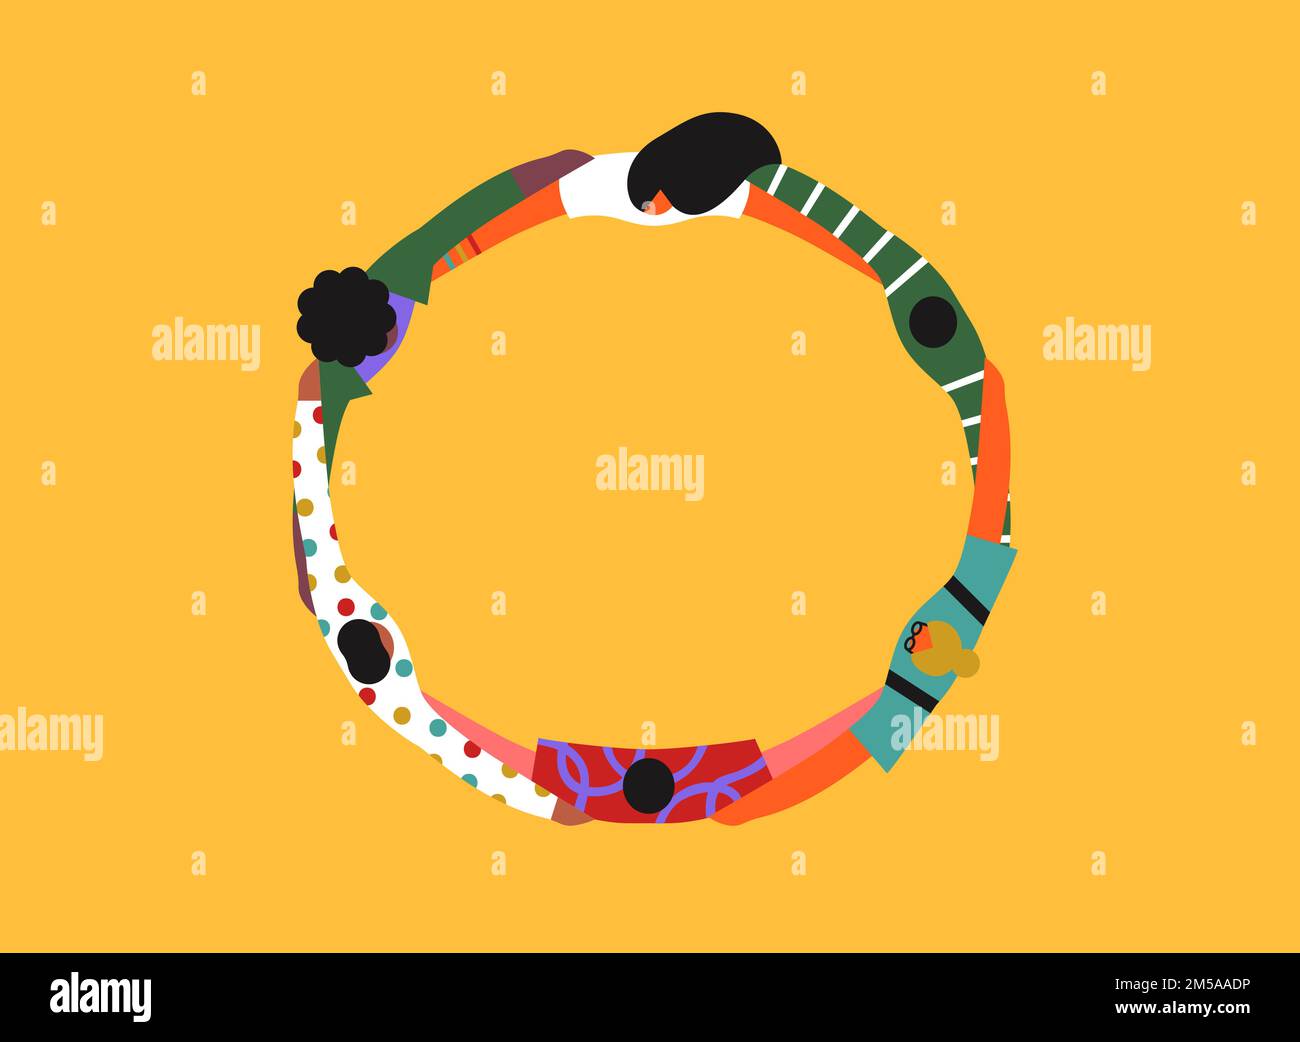 Cercle de hug de groupe d'amis coloré, illustration moderne de dessin animé plat dans un style géométrique abstrait. Des personnes diverses qui s'unissent pour travailler en équipe o Illustration de Vecteur